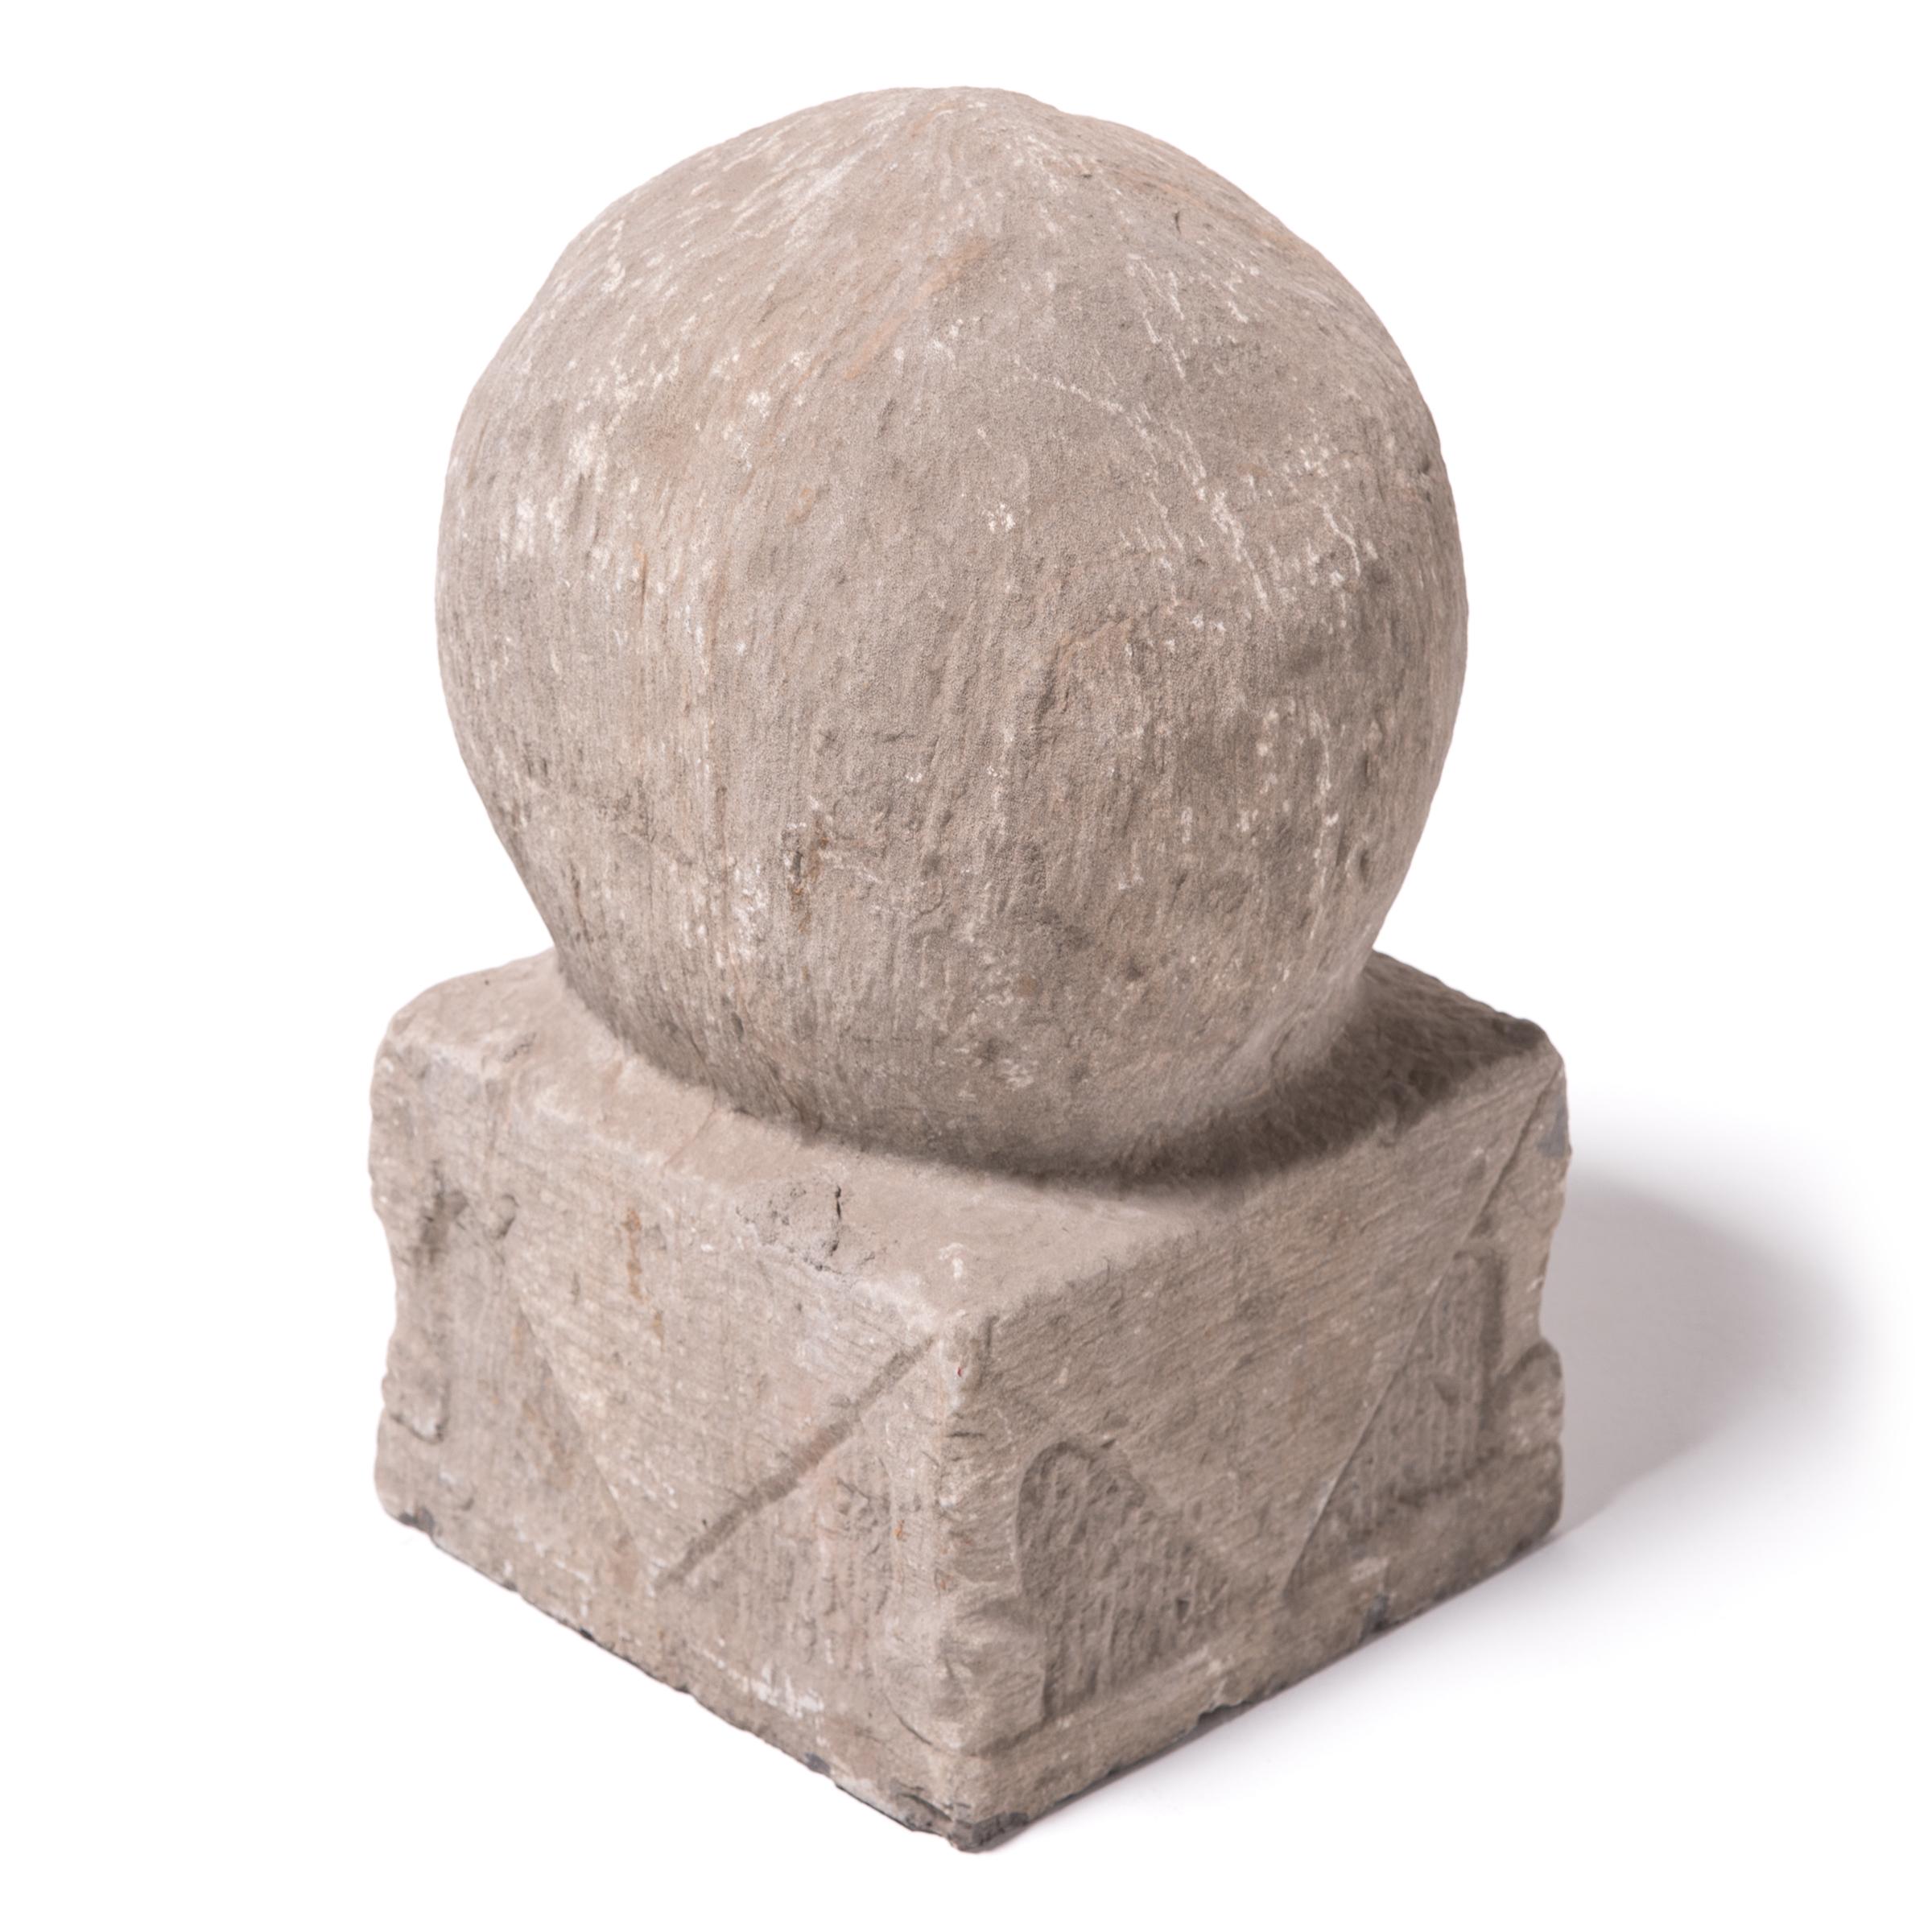 Ce charme en pierre calcaire sculptée promet la longévité sous la forme d'une pêche immortelle. Selon la mythologie chinoise, le palais de l'empereur de Jade était entouré de pêchers qui donnaient des fruits mûrs tous les trois mille ans. Une seule